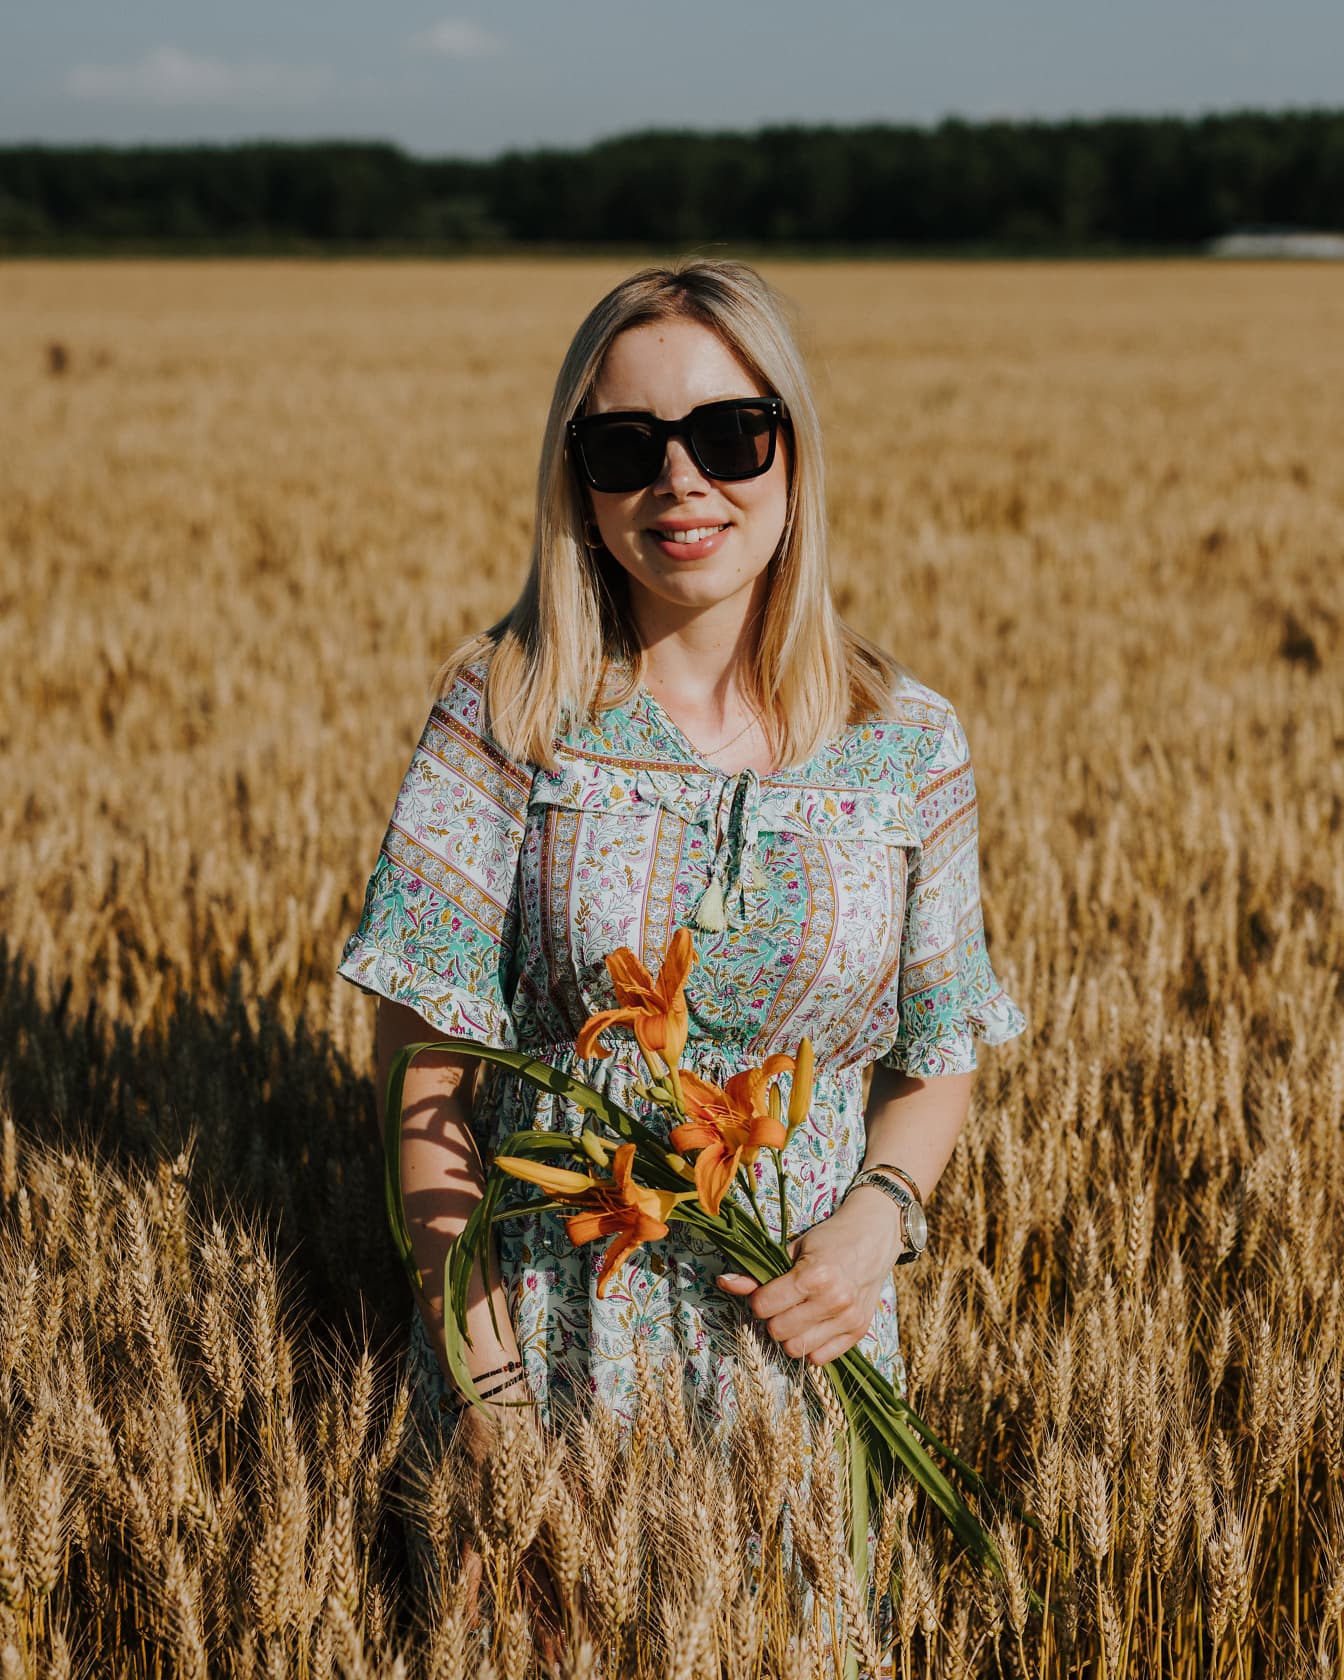 Potret seorang wanita cantik yang tersenyum memukau memegang bunga lily di ladang gandum di musim panas